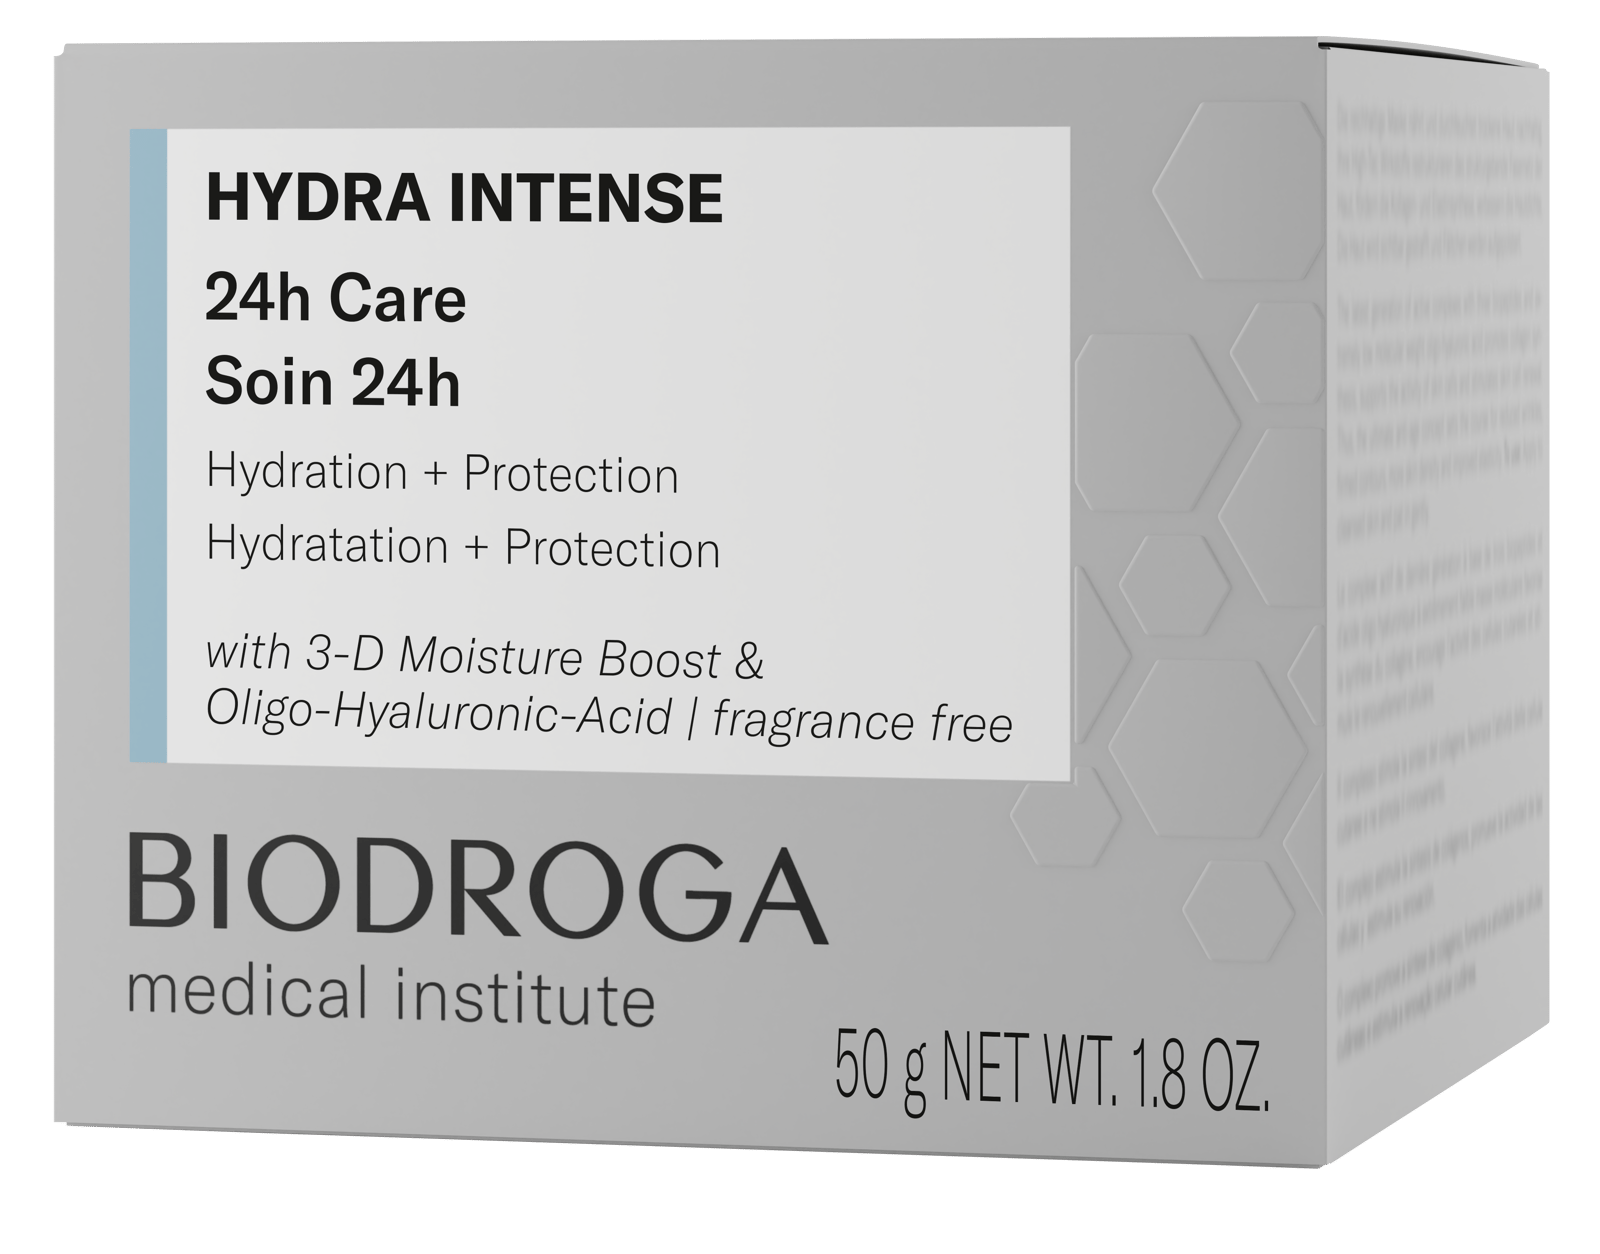 BIODROGA Medical Institute Hydra Intense 24h Care